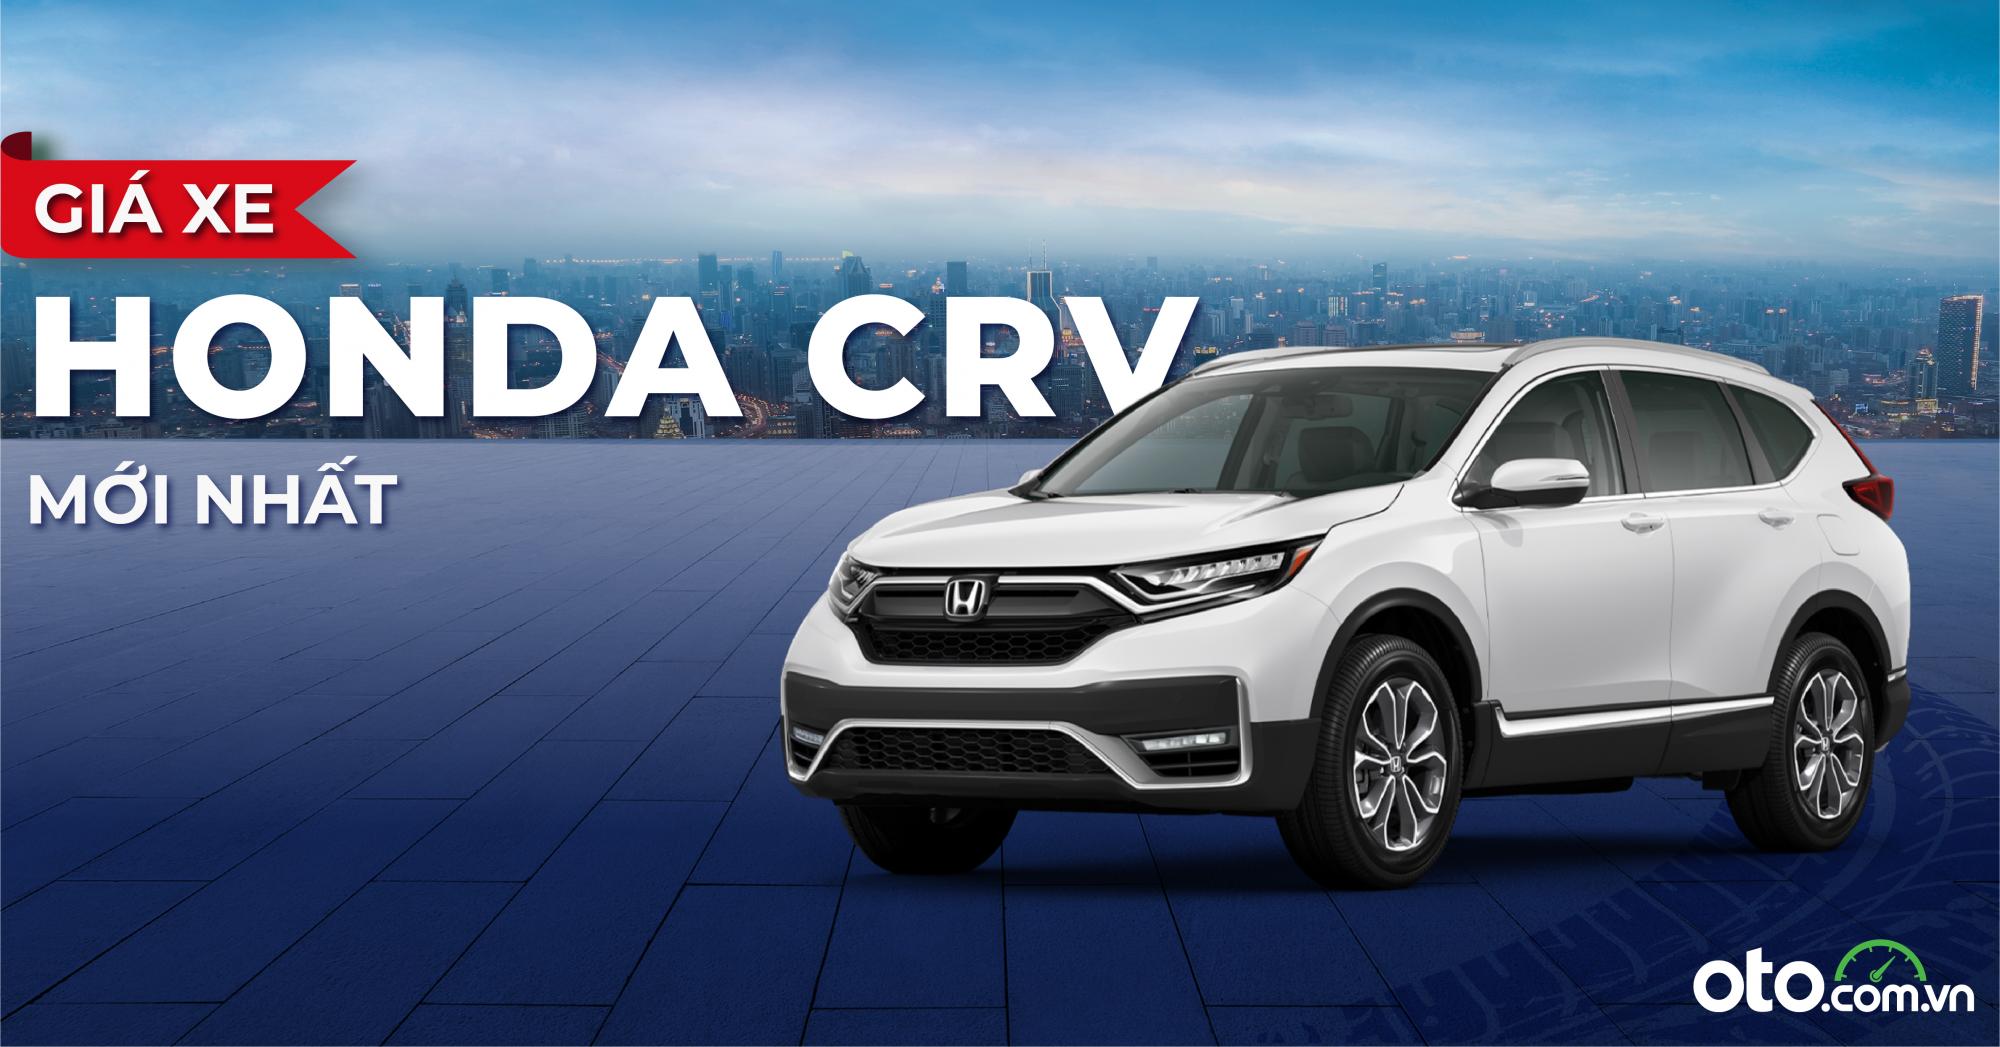 Giá xe Honda CR-V tháng 10/2021 mới nhất - Oto.com